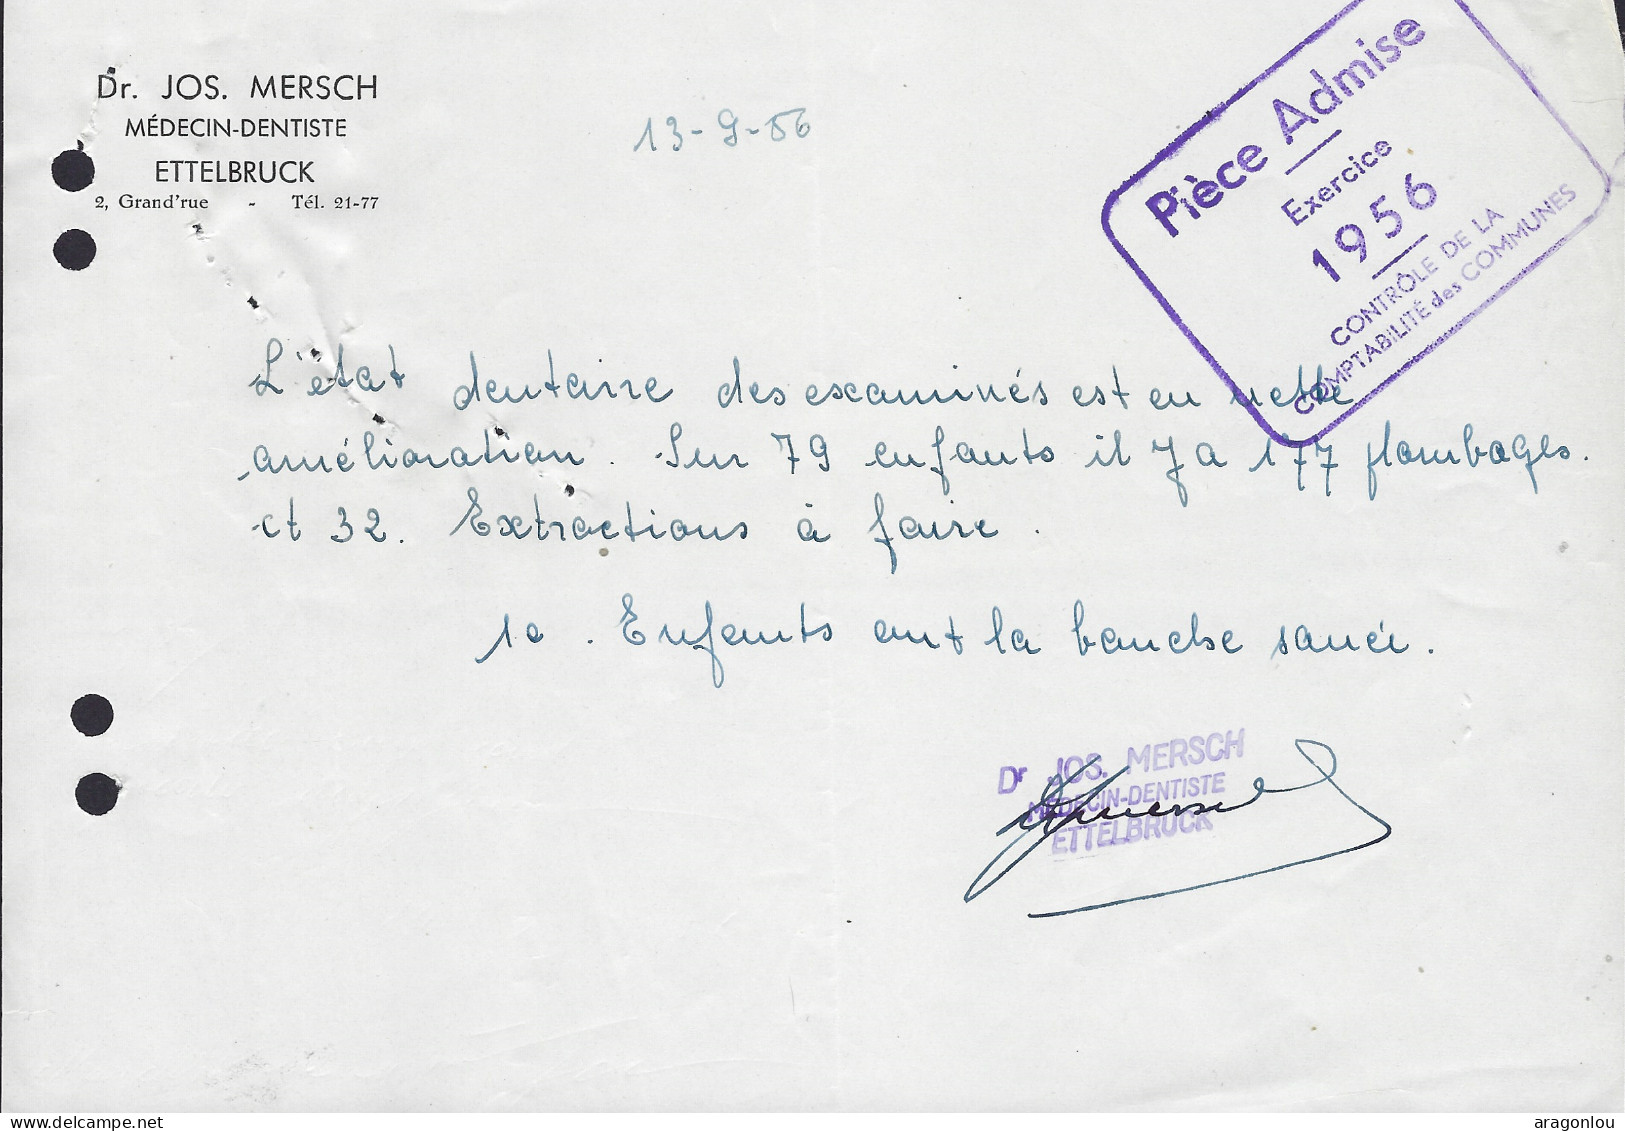 Luxembourg - Luxemburg - Facture -  Dr. JOS. MERSCH , MÉDECIN DENTISTE , ETTELBRUCK   1956 - Lussemburgo